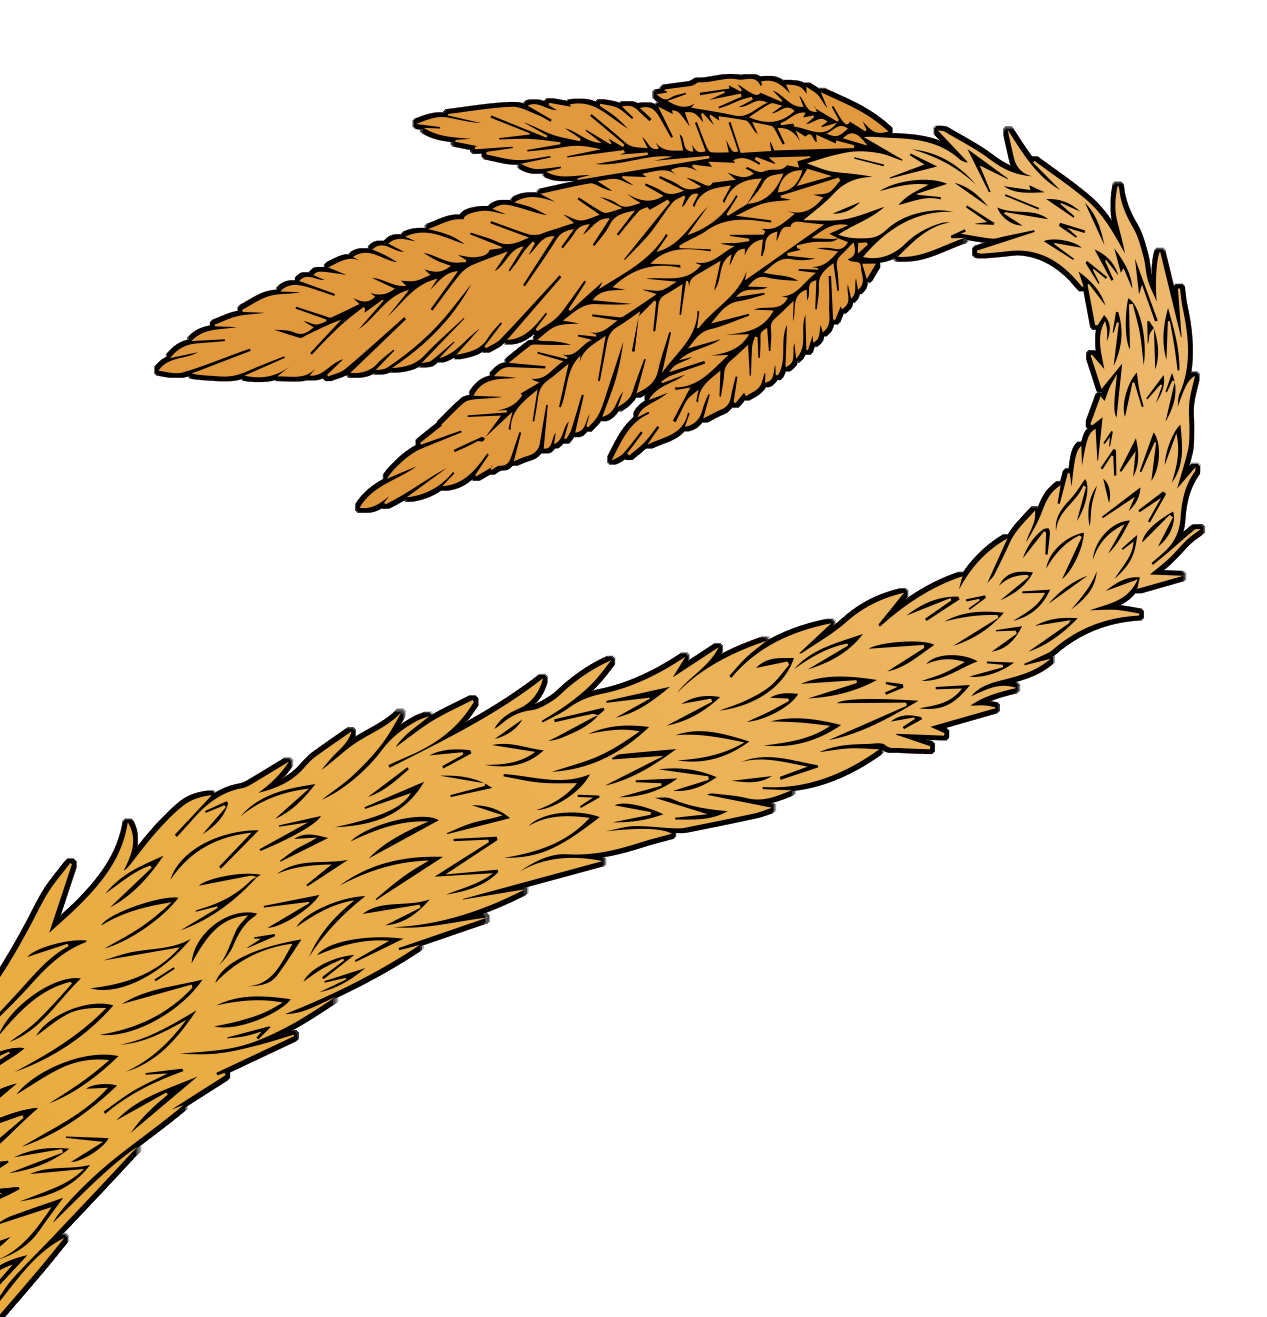 a dragon's tail